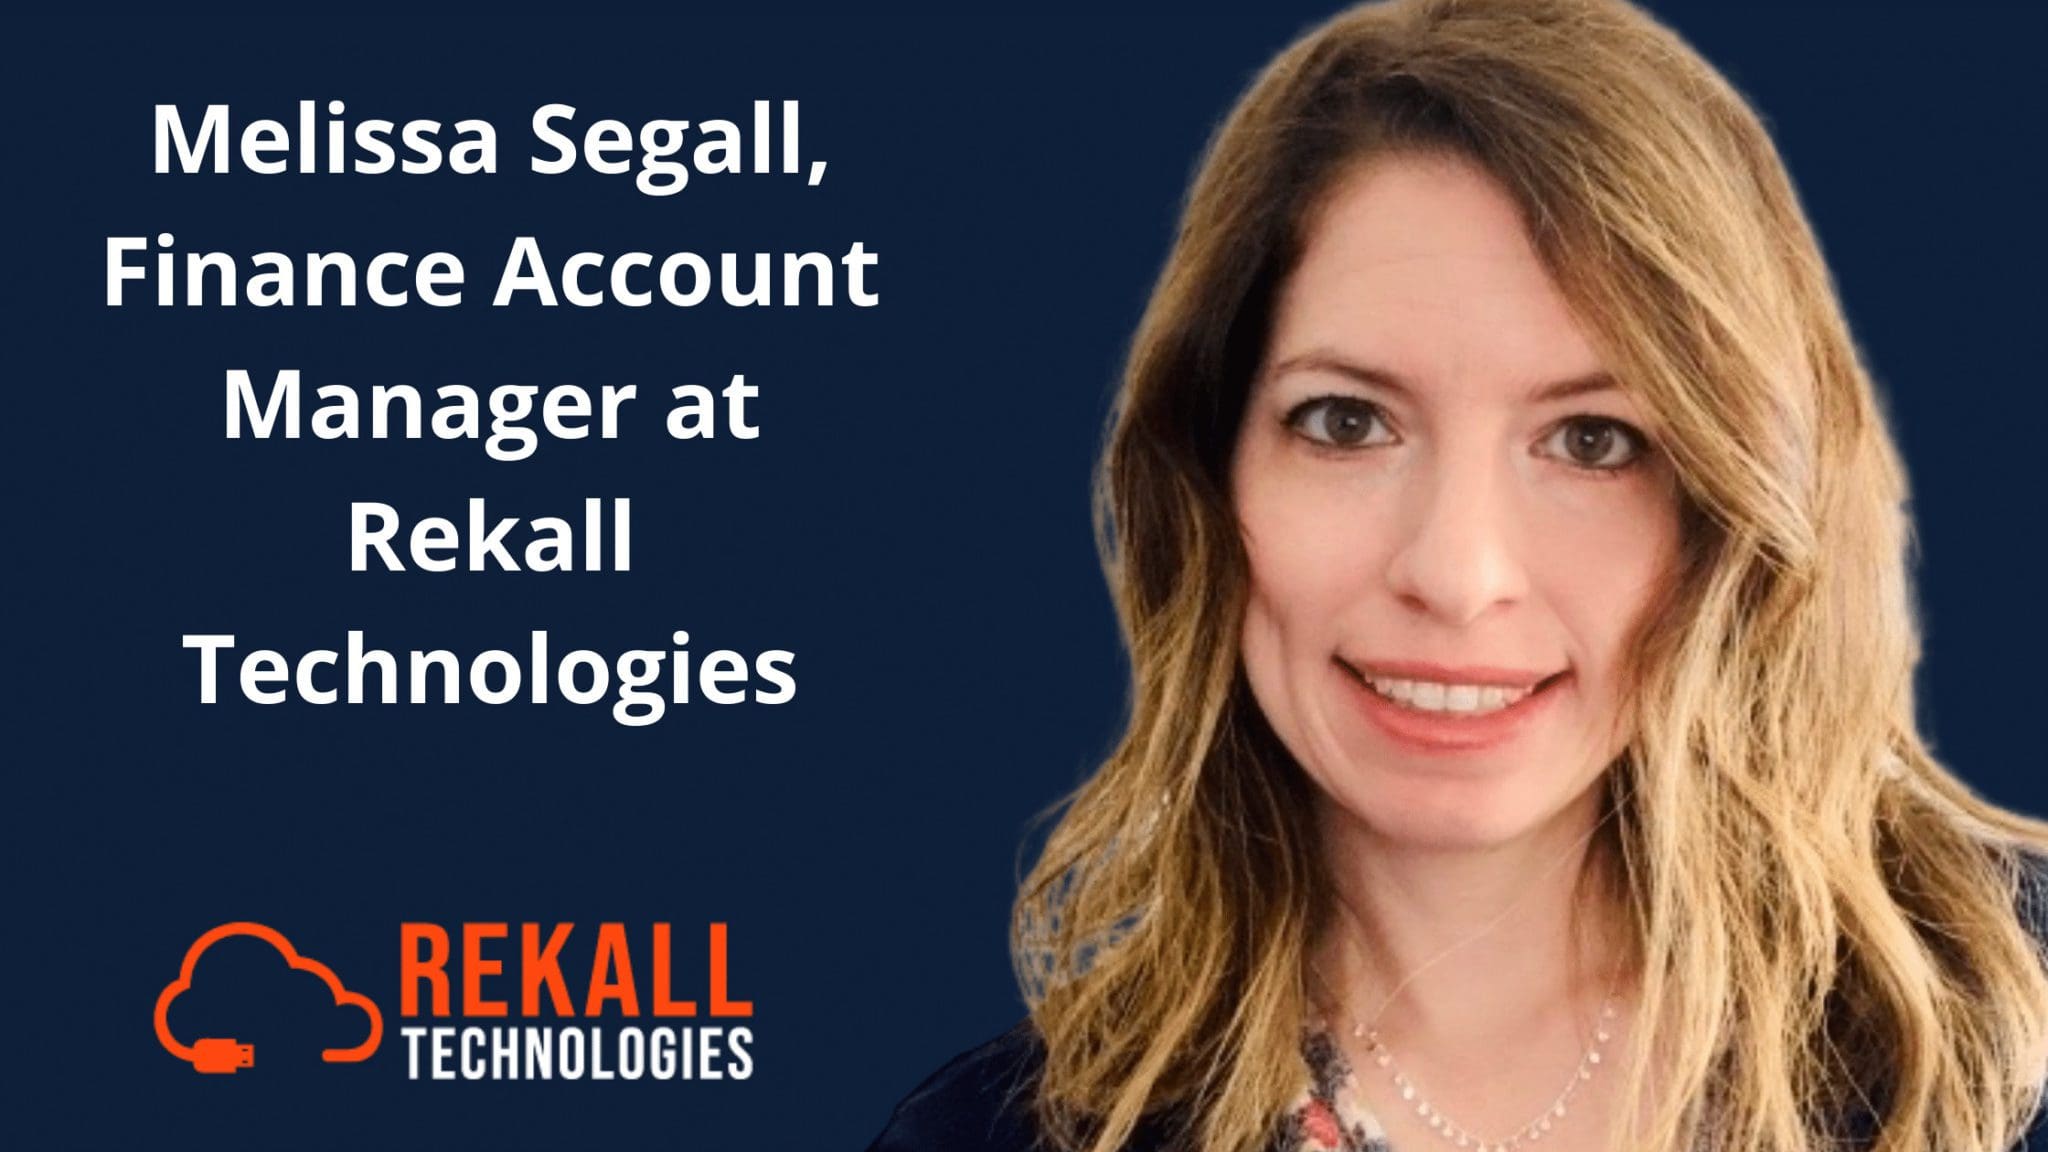 Meet Melissa Segall, Finance Account Manager